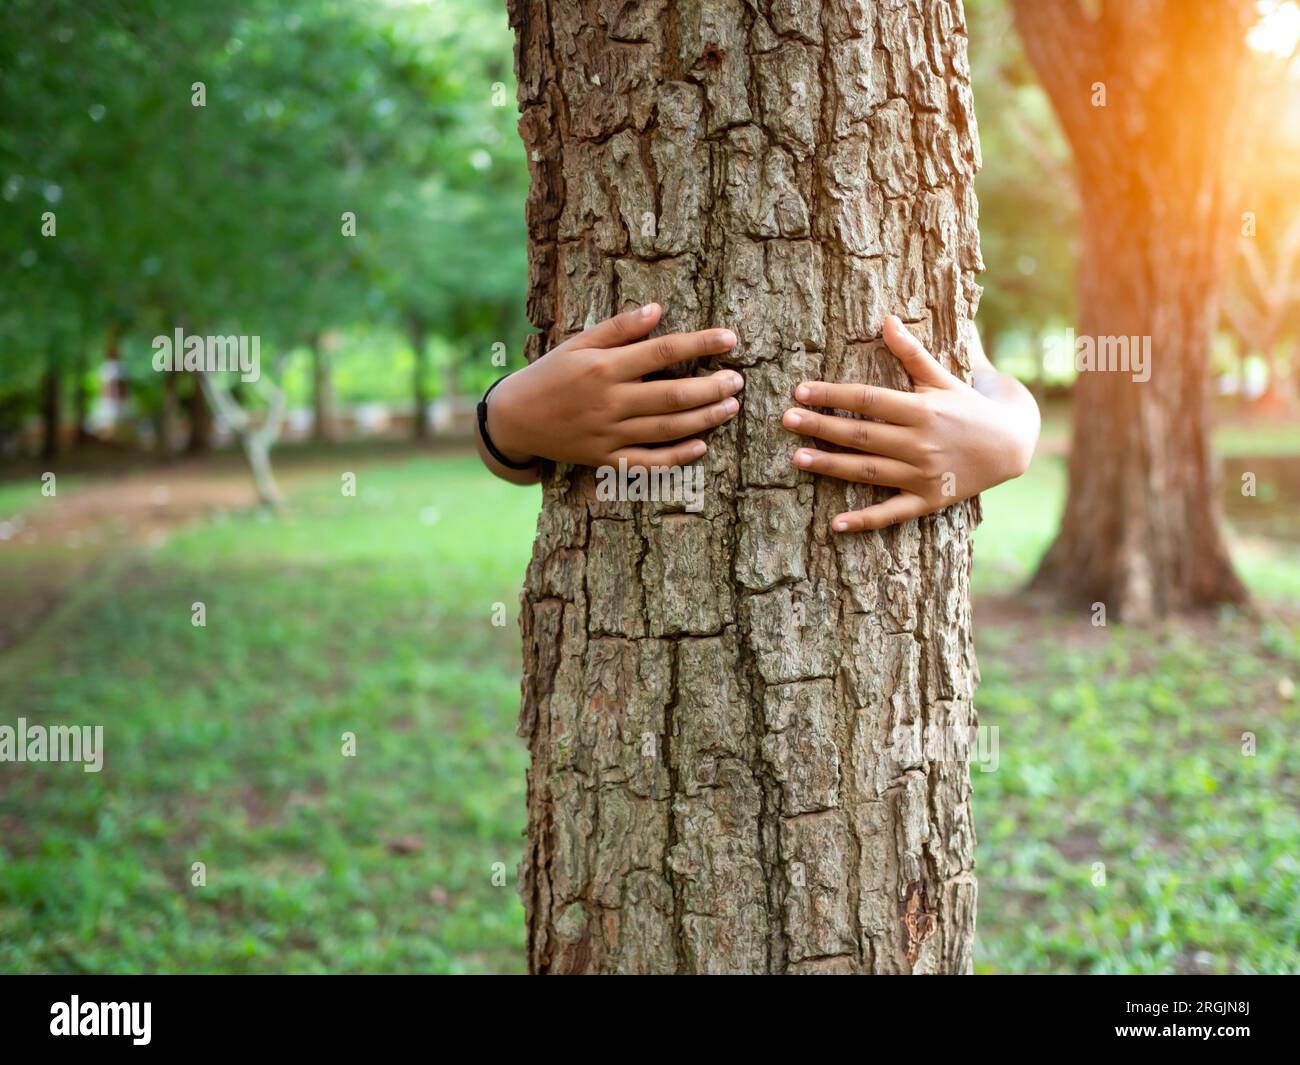 Les mains humaines enlacent un arbre amoureux. Représenter en aidant à préserver l'environnement. Concept de sauver le monde. Banque D'Images